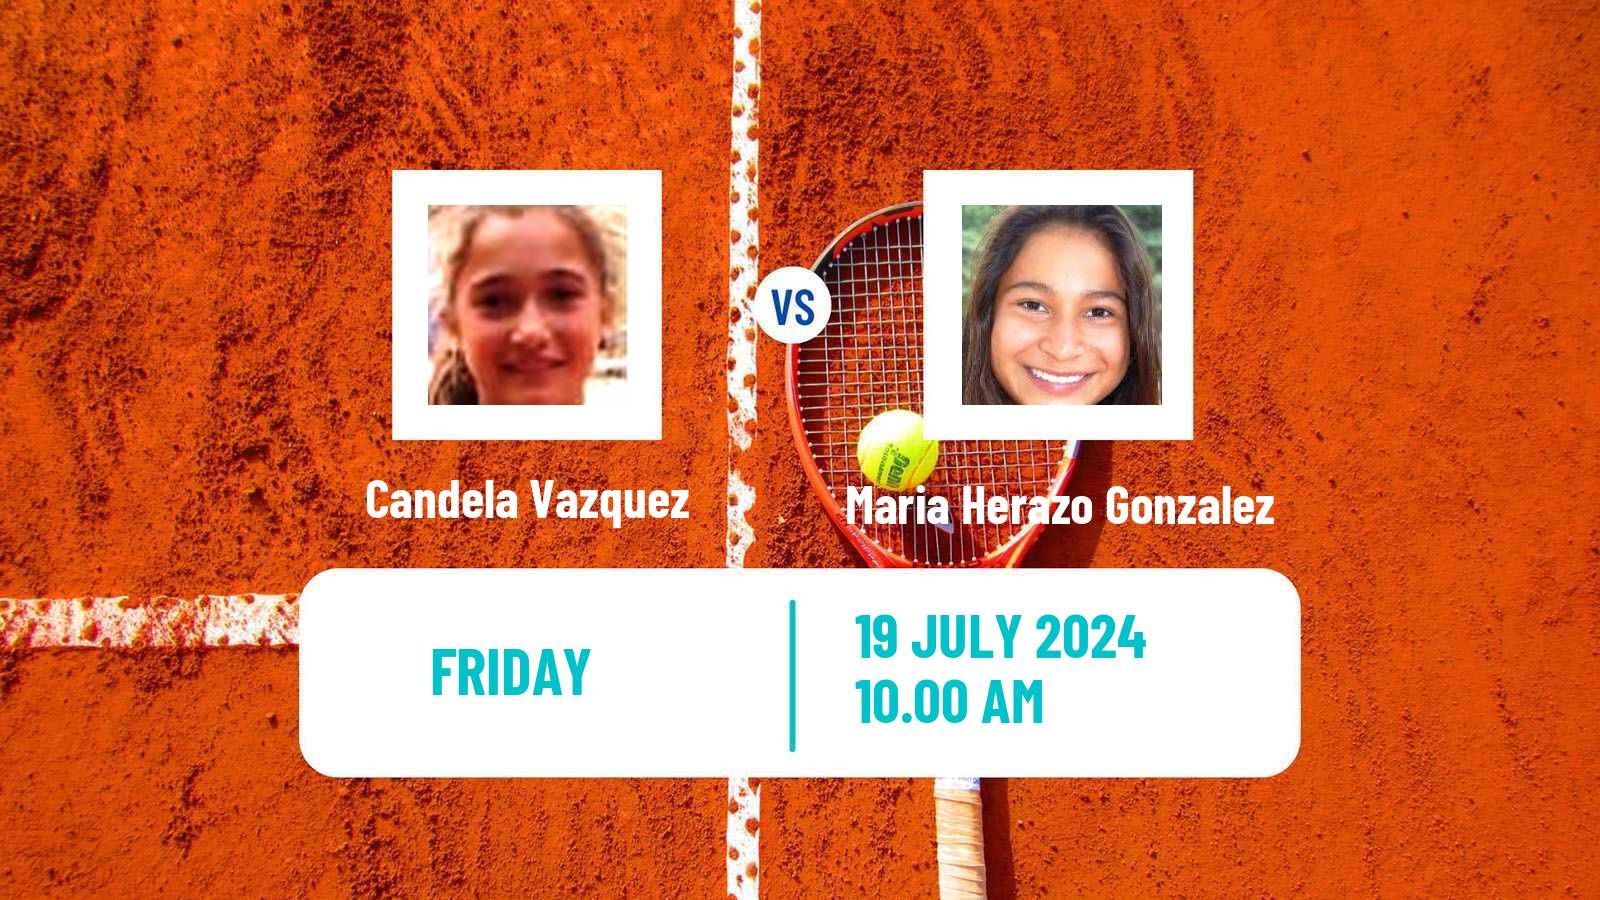 Tennis ITF W15 Lujan 2 Women Candela Vazquez - Maria Herazo Gonzalez